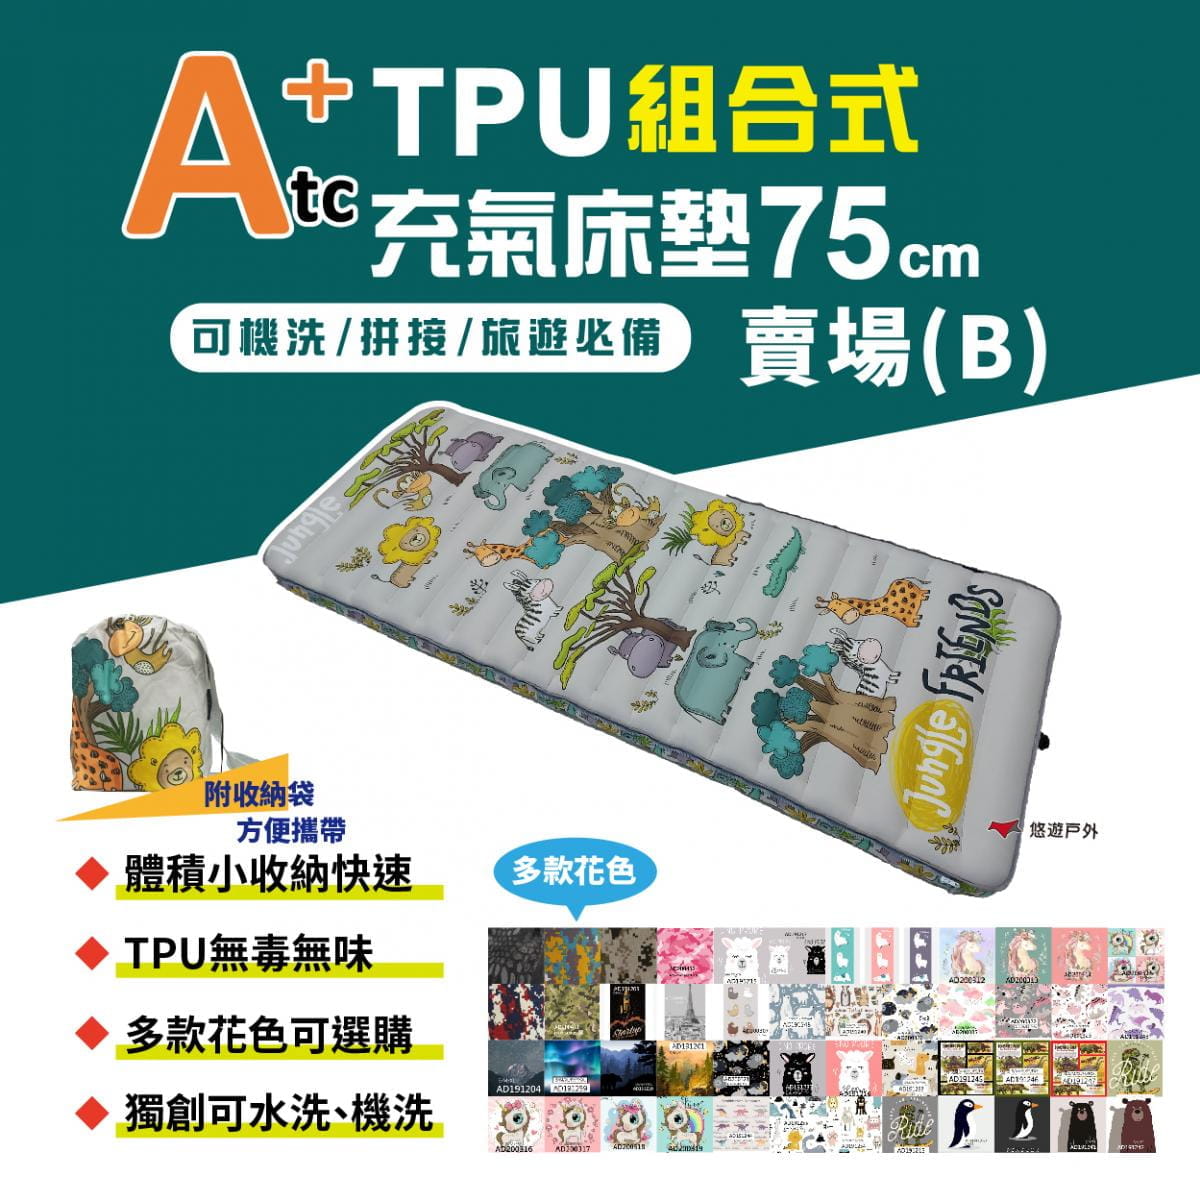 【ATC】TPU組合充氣床墊75cm 單人款_B賣場 (悠遊戶外) 1